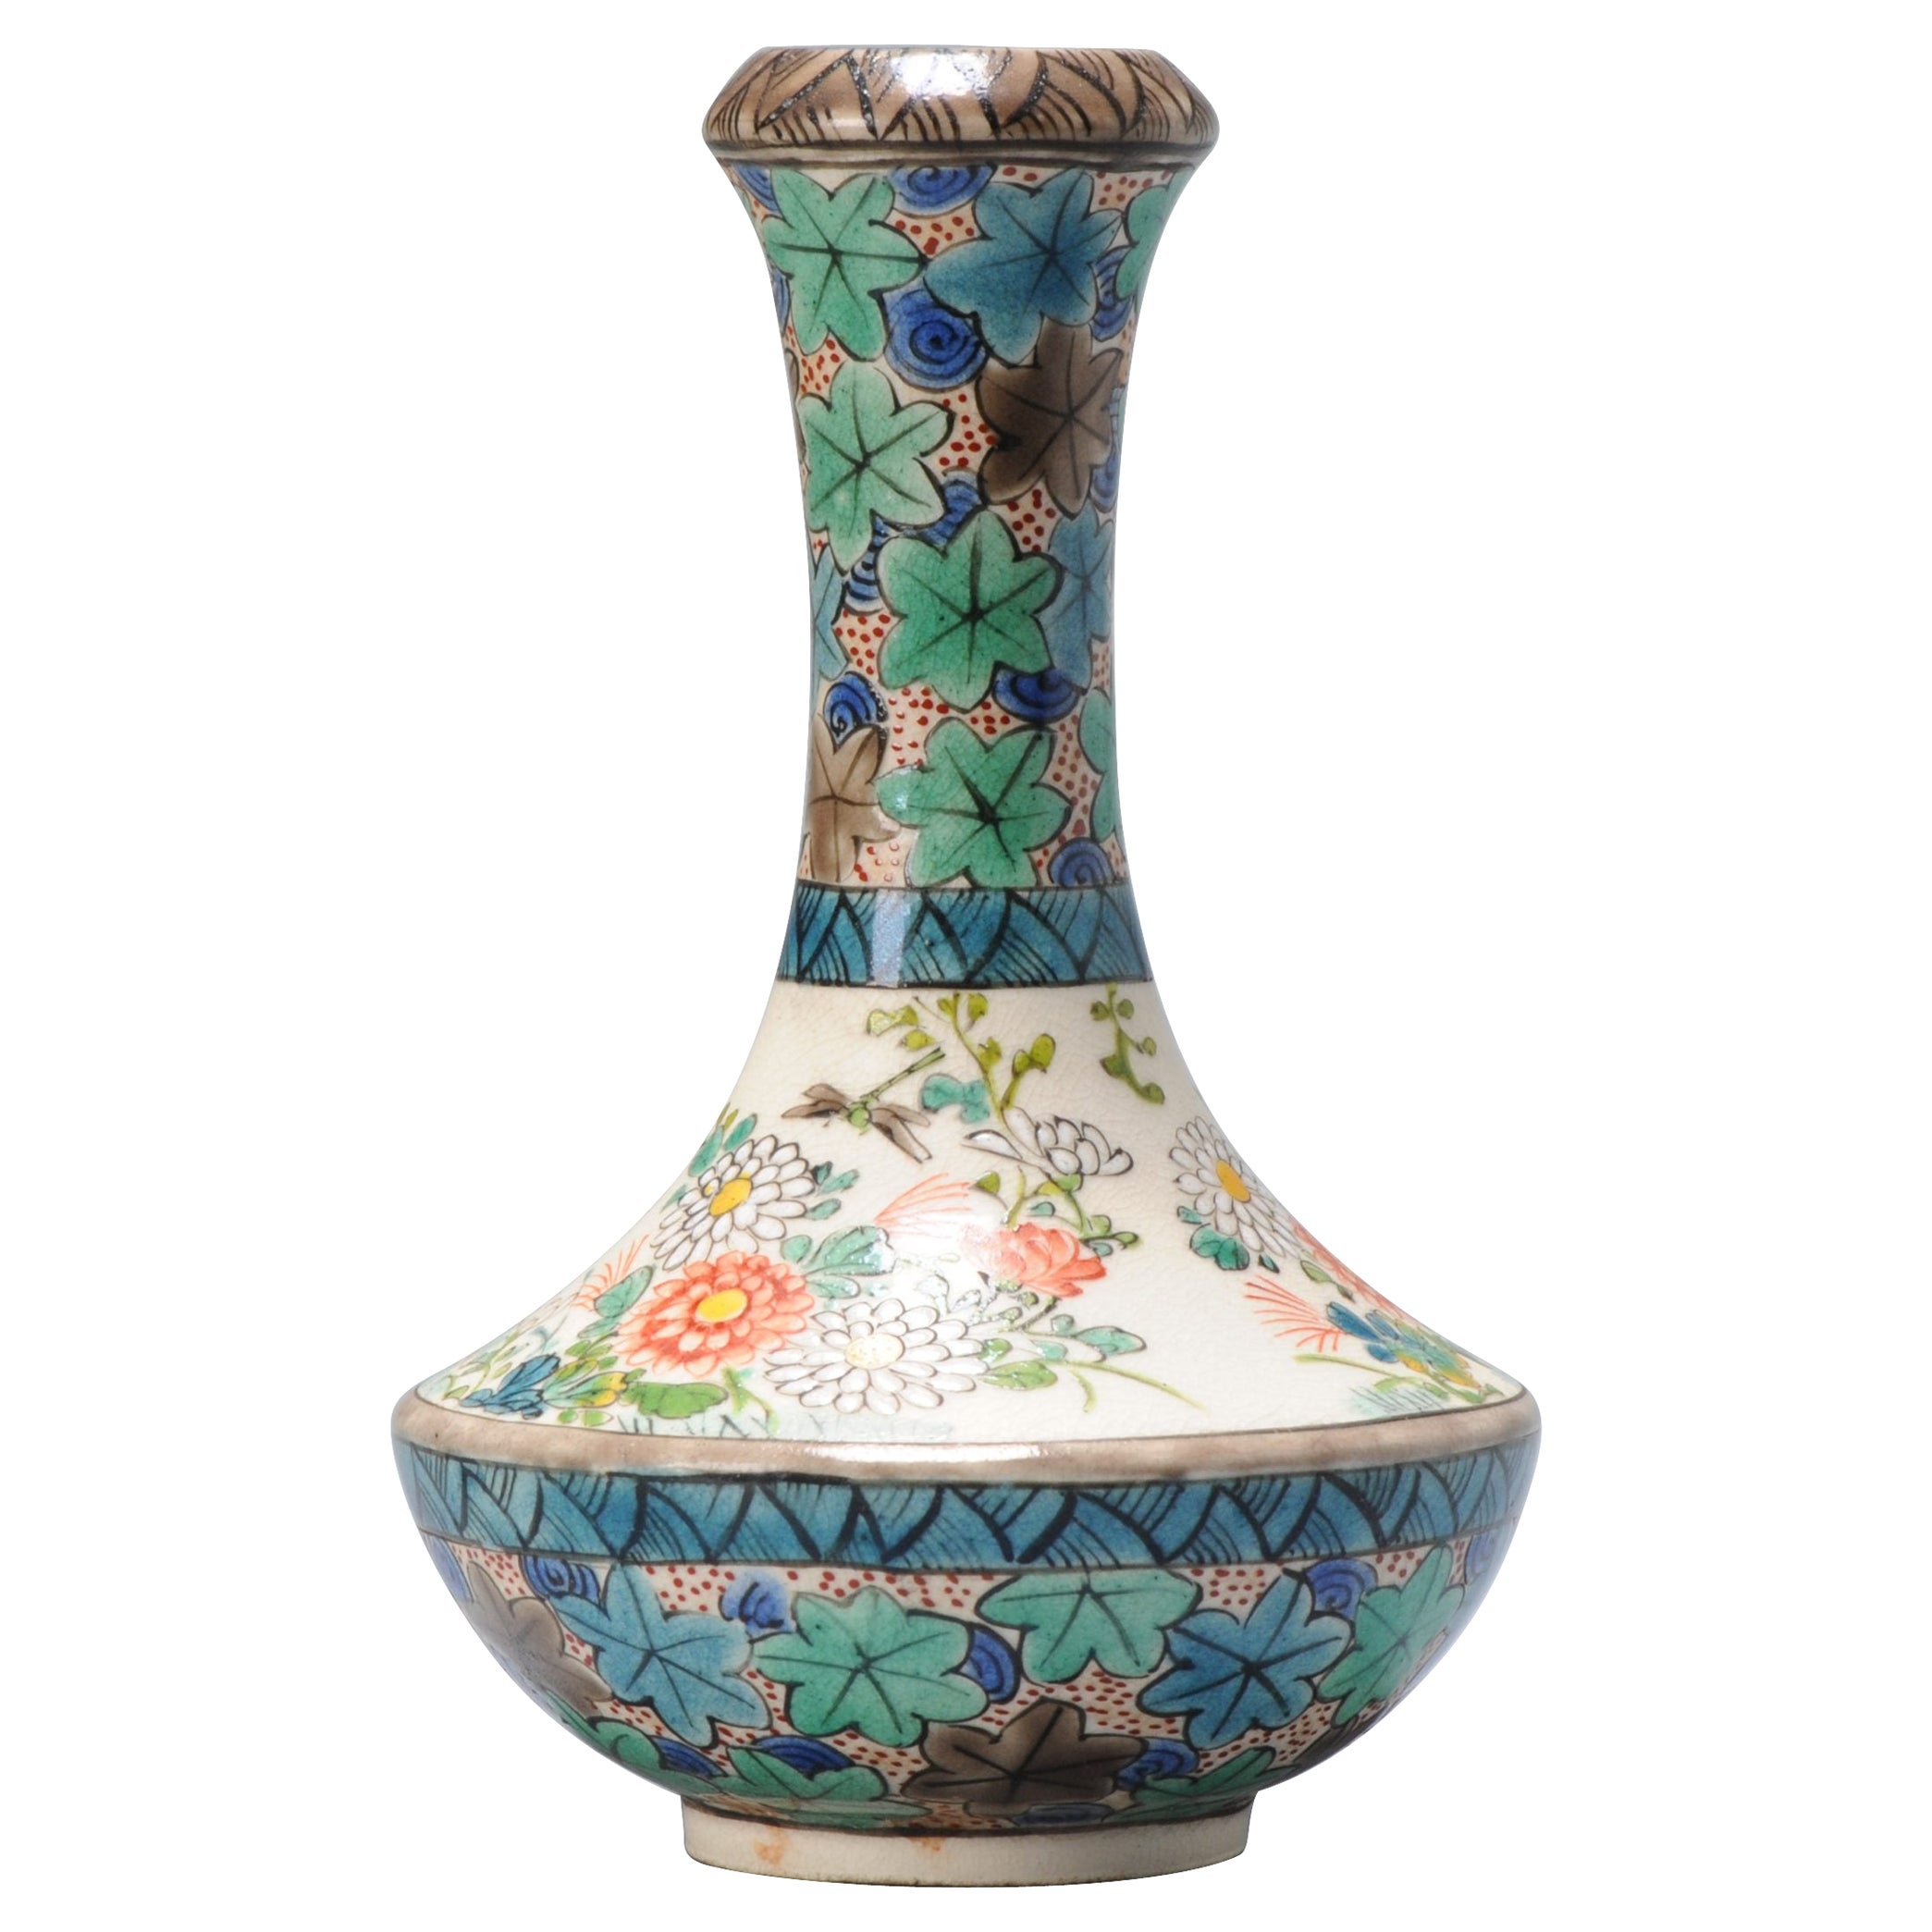 Petit vase japonais ancien de la période Meiji Satsuma marqué Chikusai